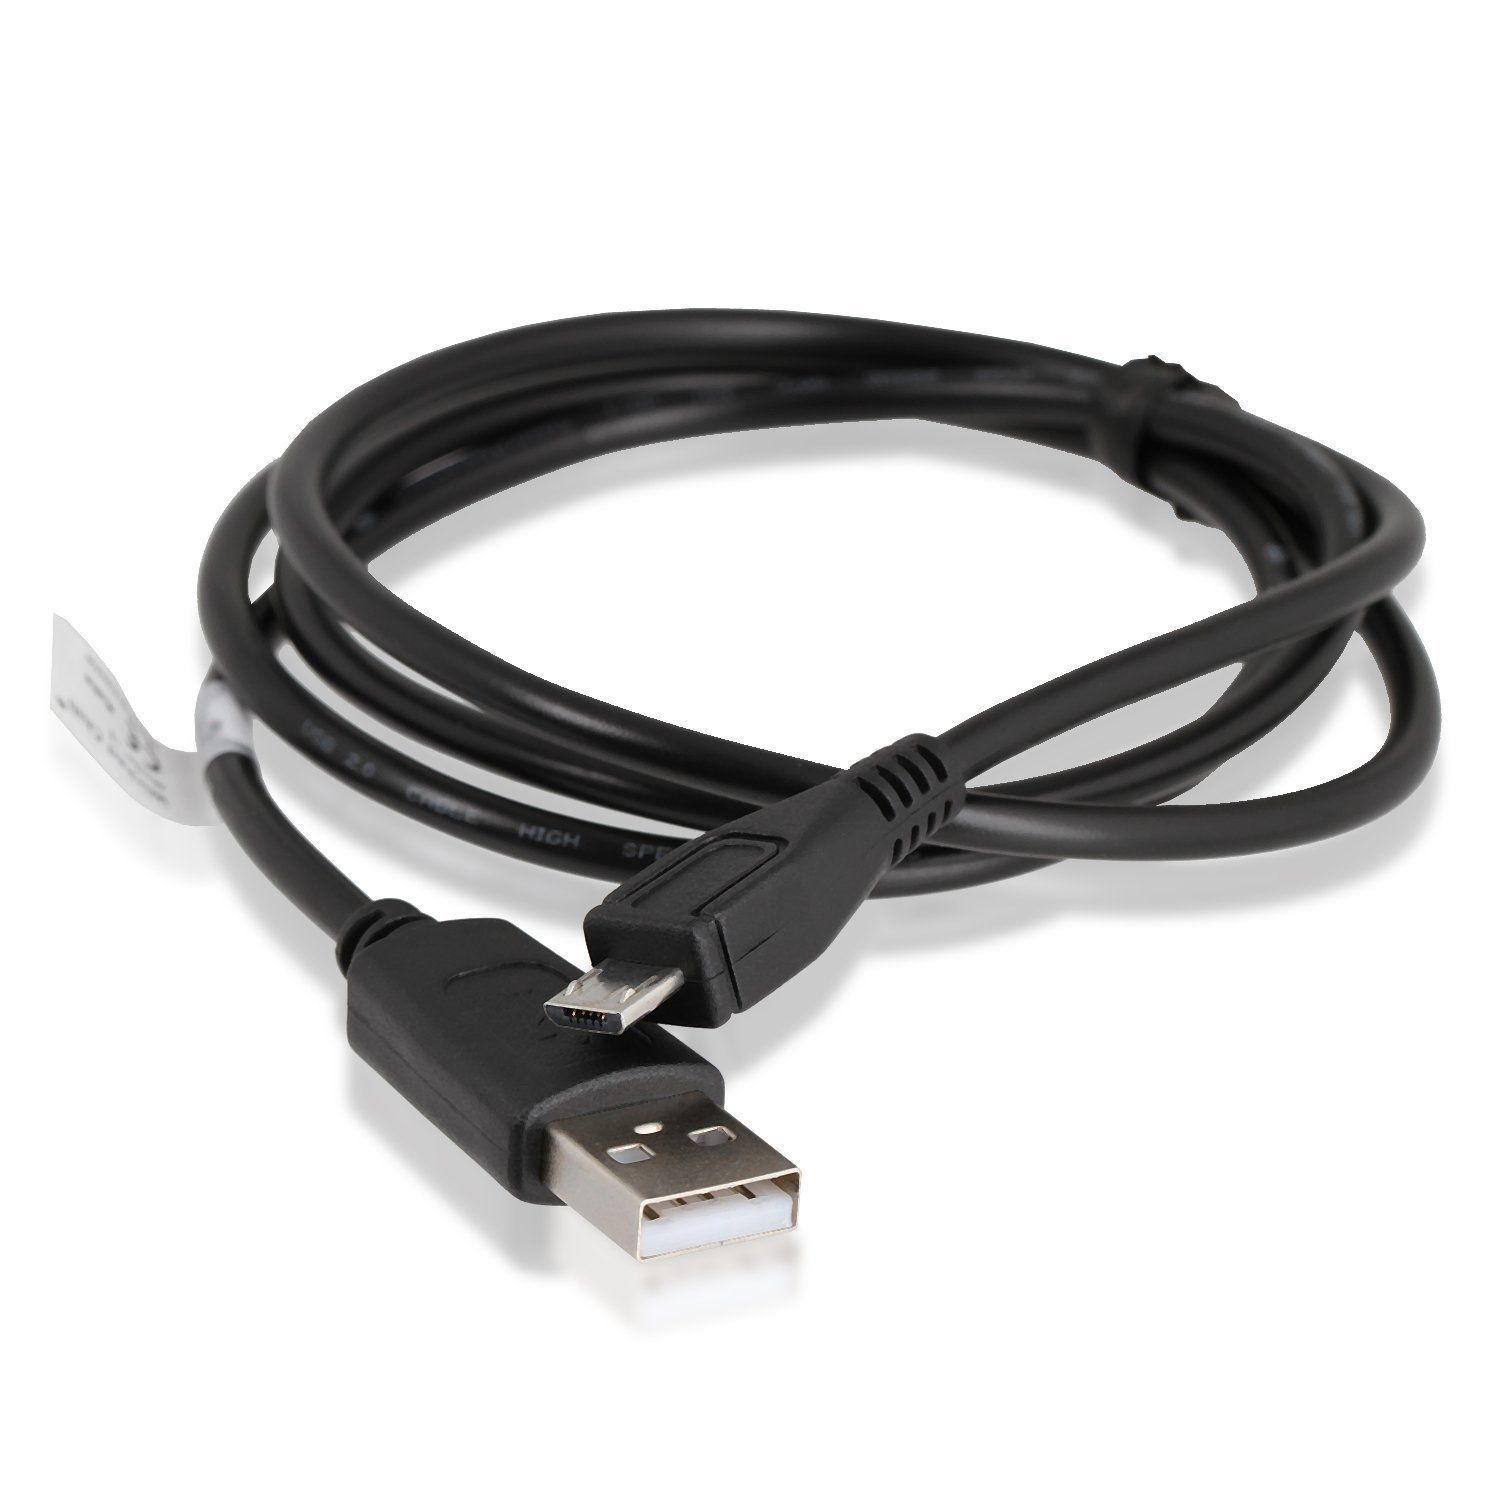 WICKED CHILI für Gamepad, Schwarz 180cm Micro DualShock PS4 4 für m, Controller Ladekabel Wireless Kabel Ladekabel, Set 2er USB 1,8 